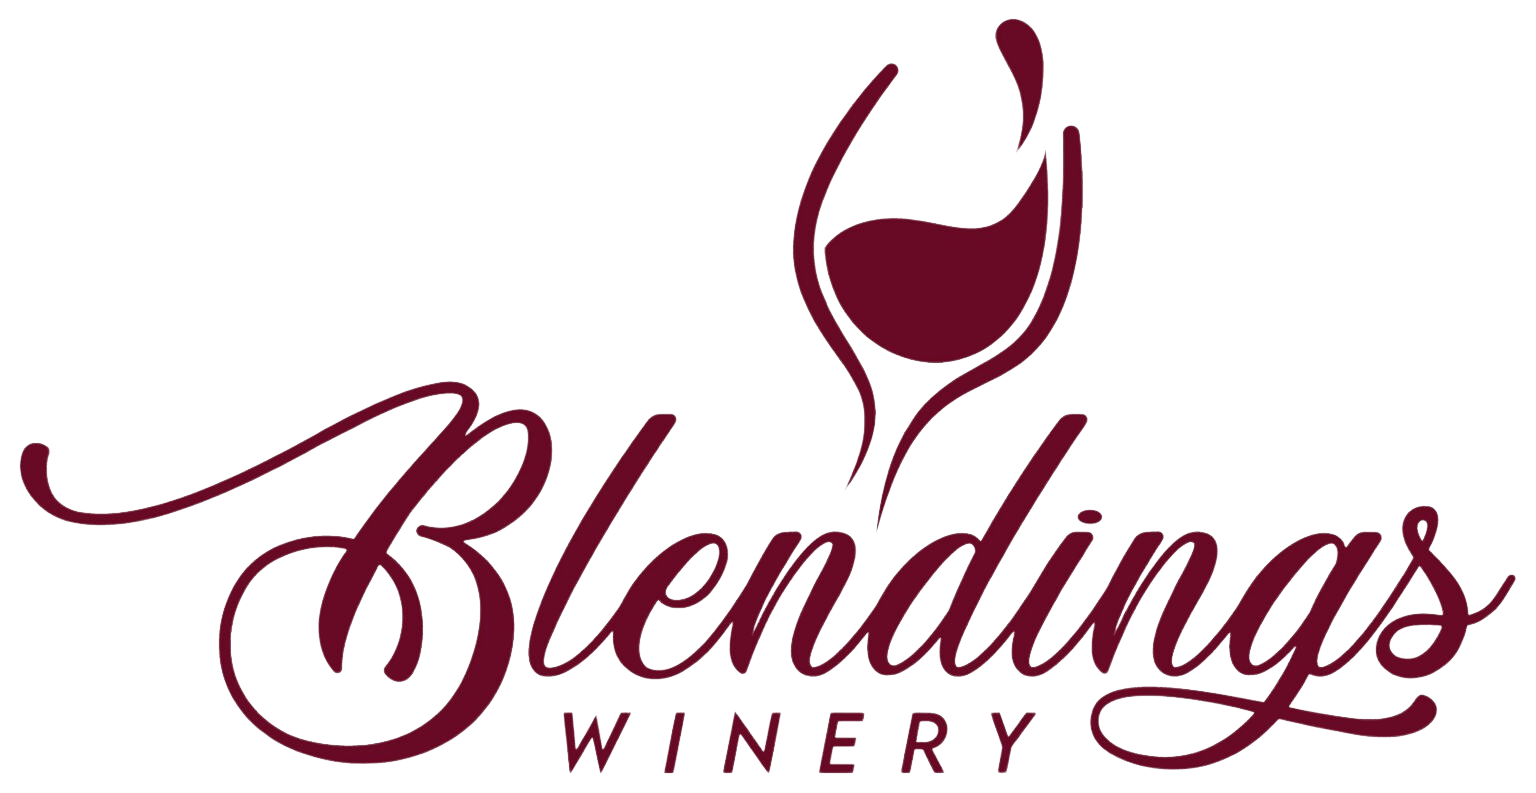 Blendings at The Hillside Vineyard